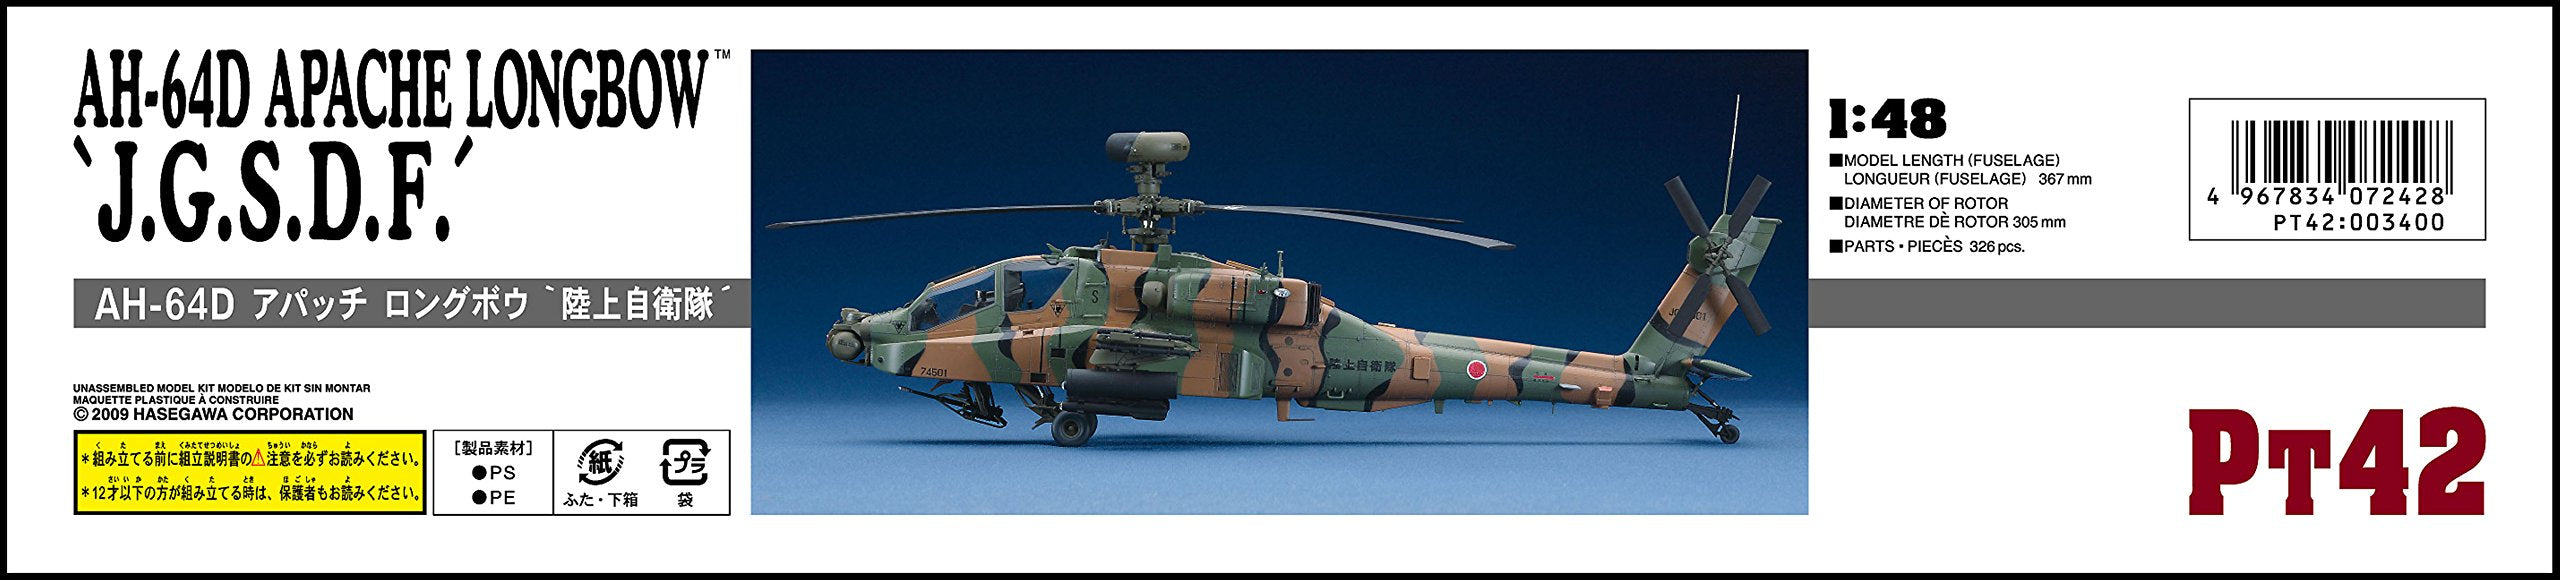 HASEGAWA 1/48 Ah-64D Apache Longbow J.G.S.D.F. Plastic Model